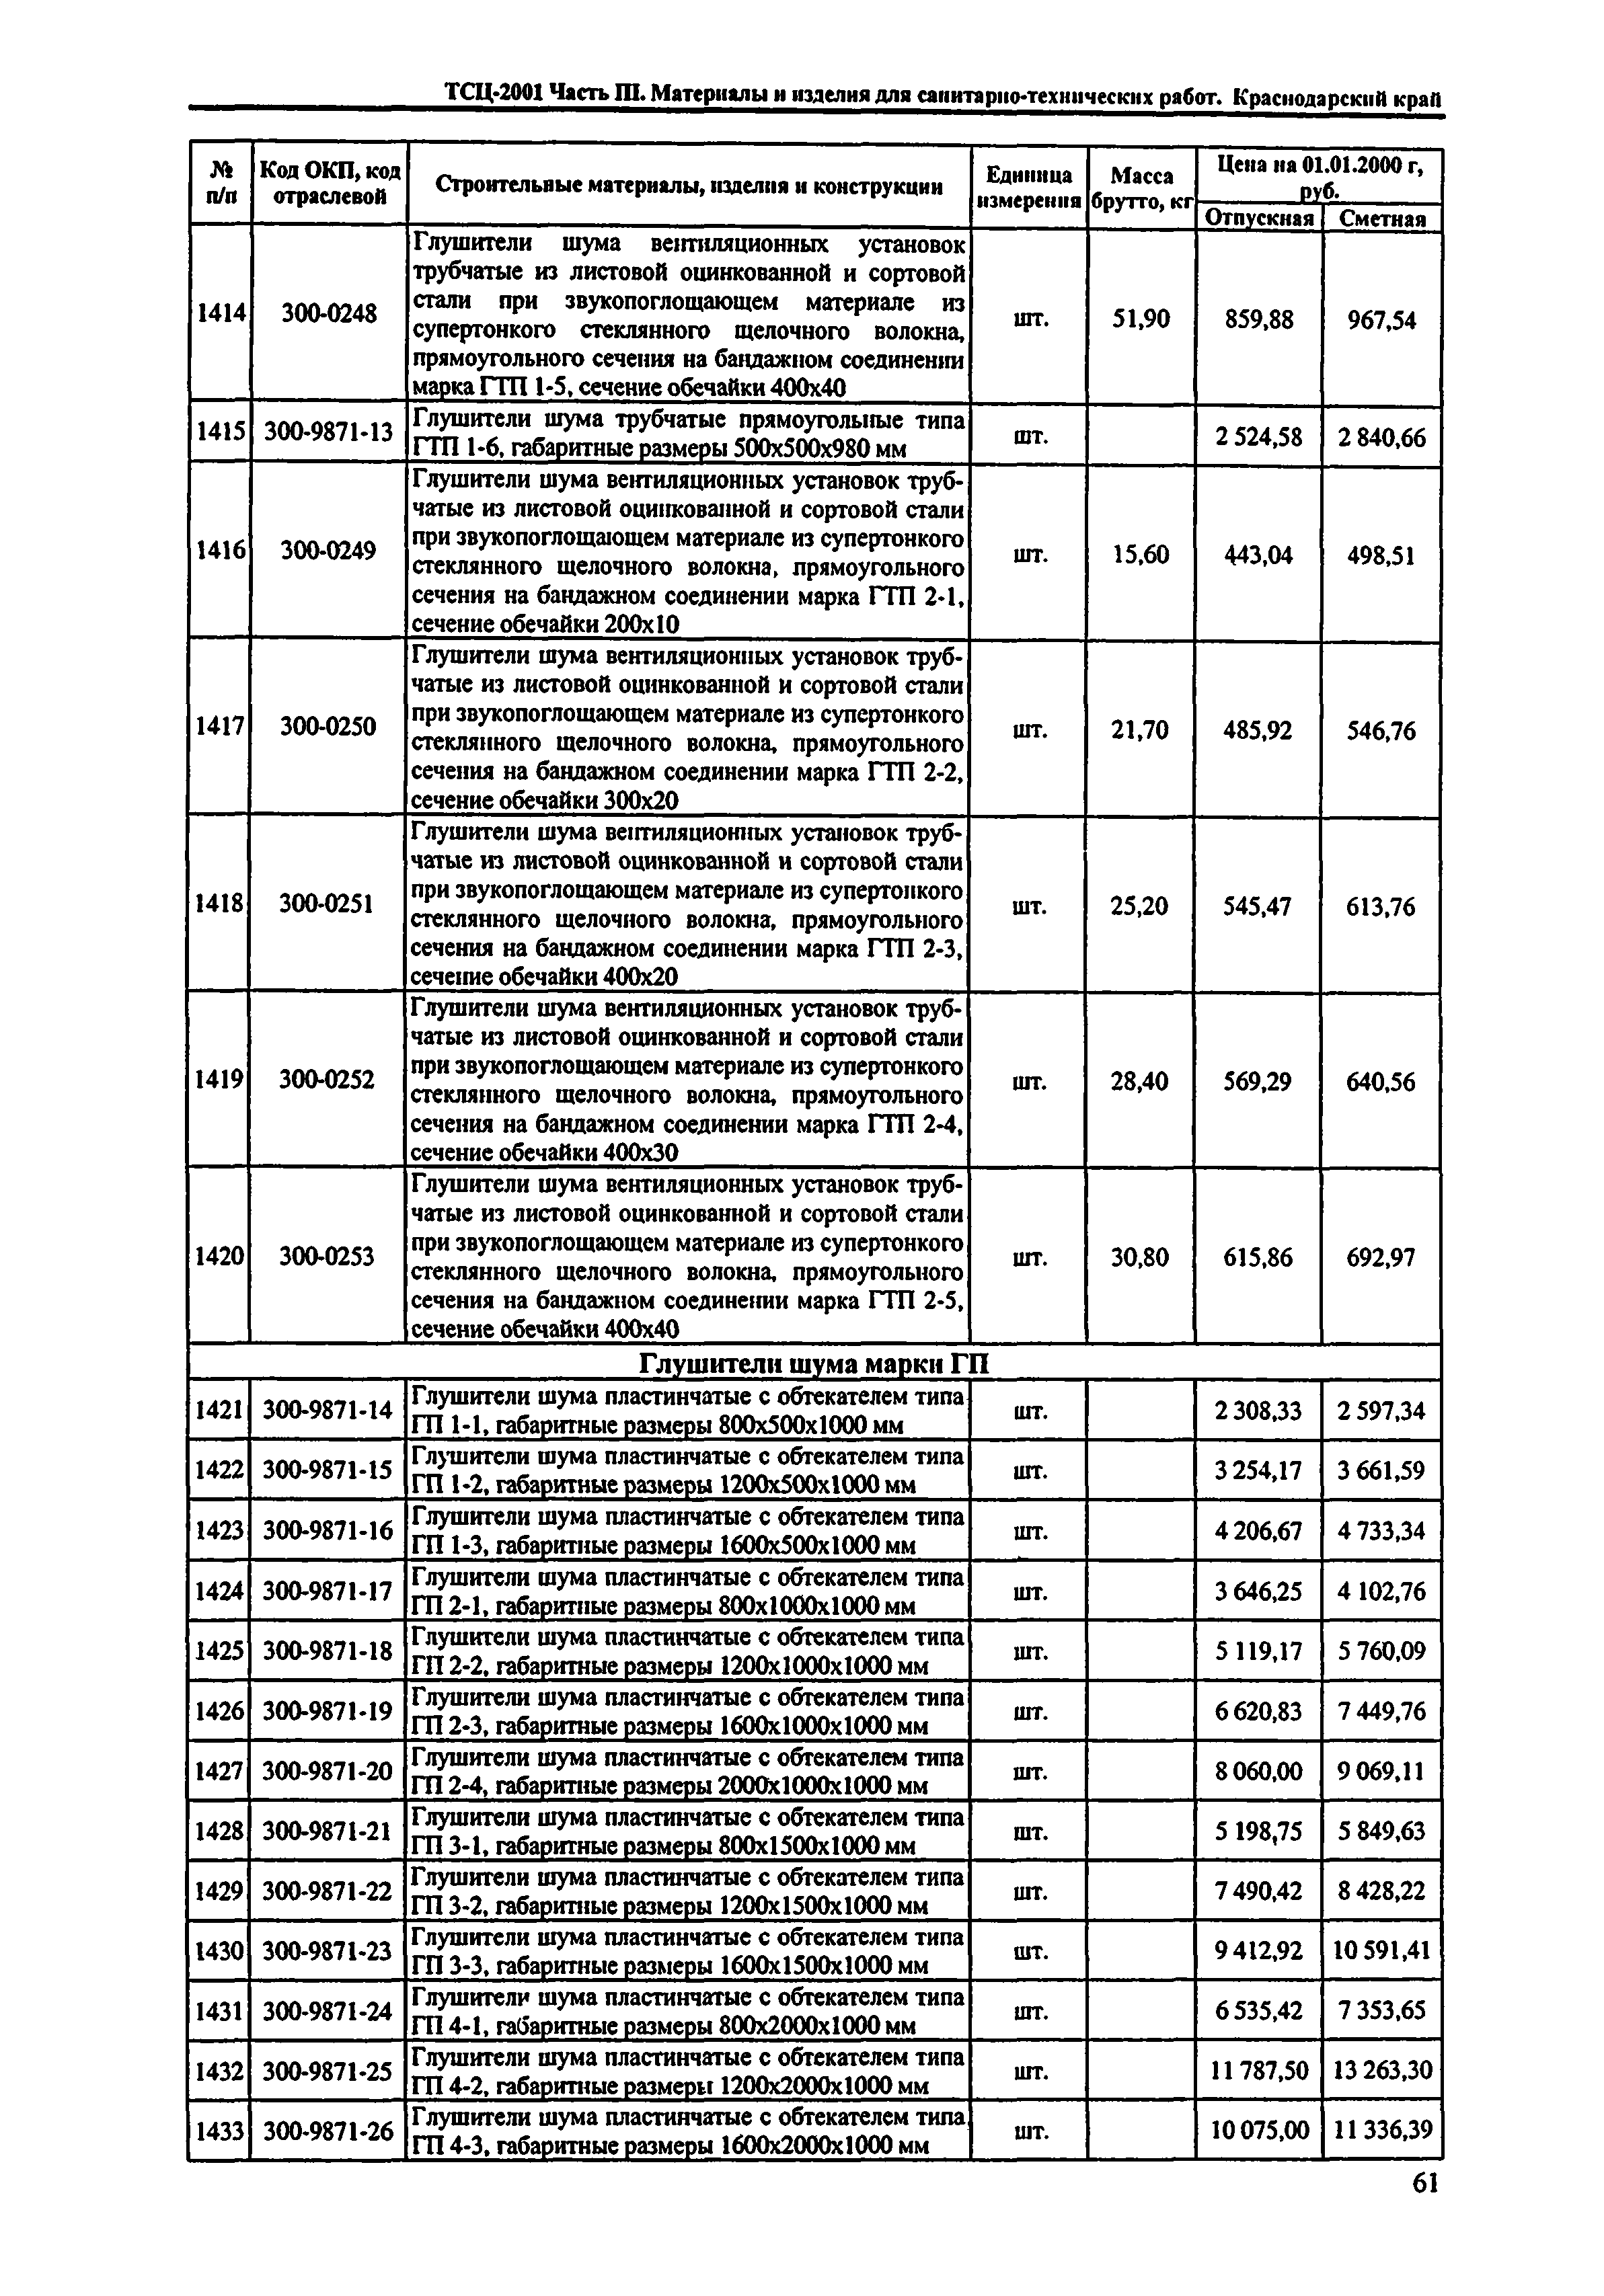 ТСЦ Краснодарский край 81-01-2001